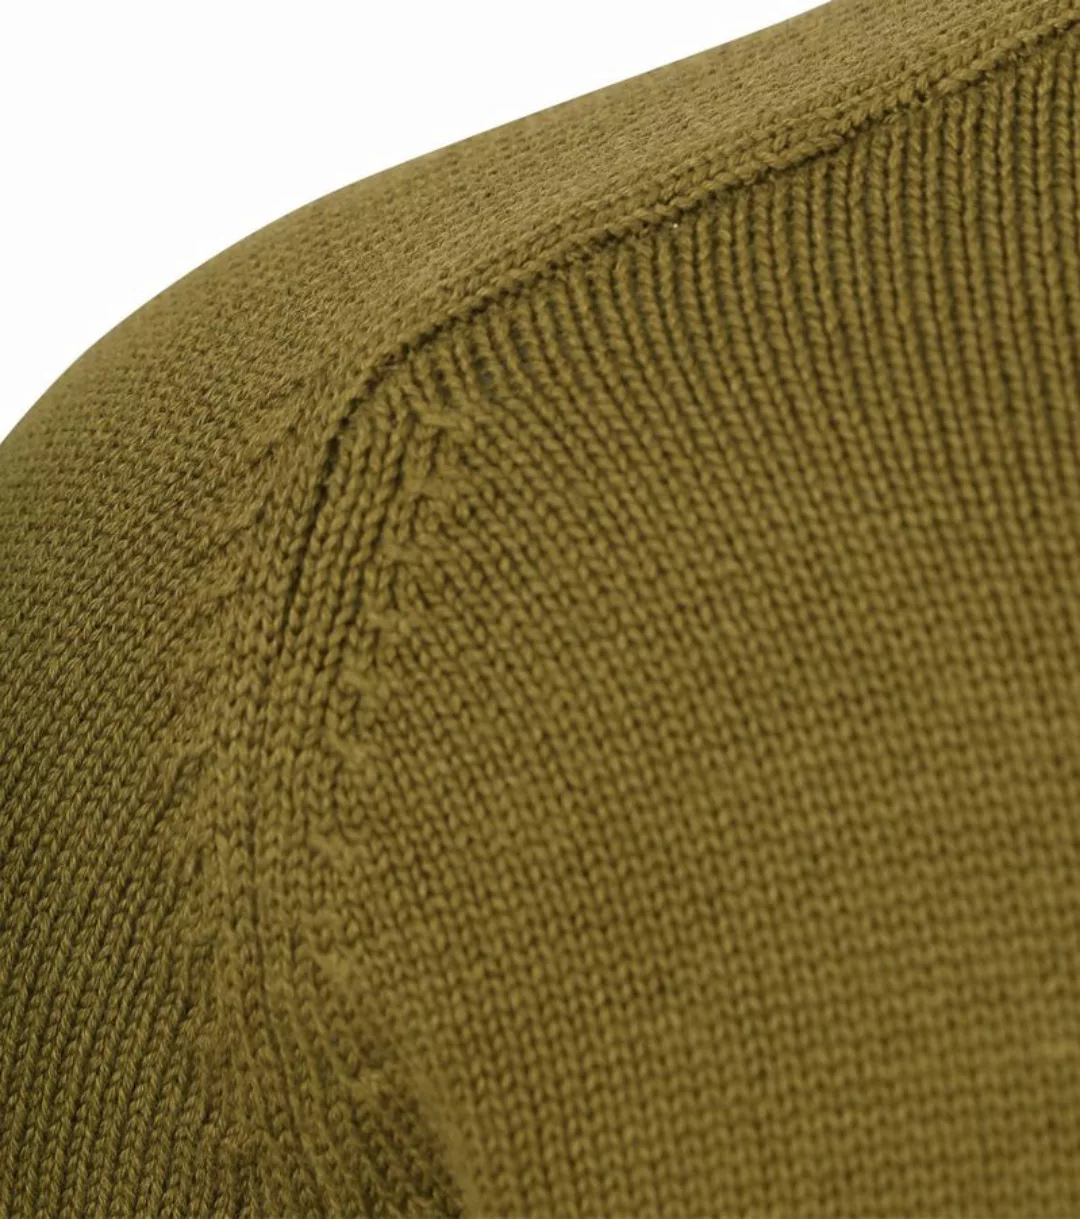 KnowledgeCotton Apparel Pullover Olivgrün - Größe XL günstig online kaufen